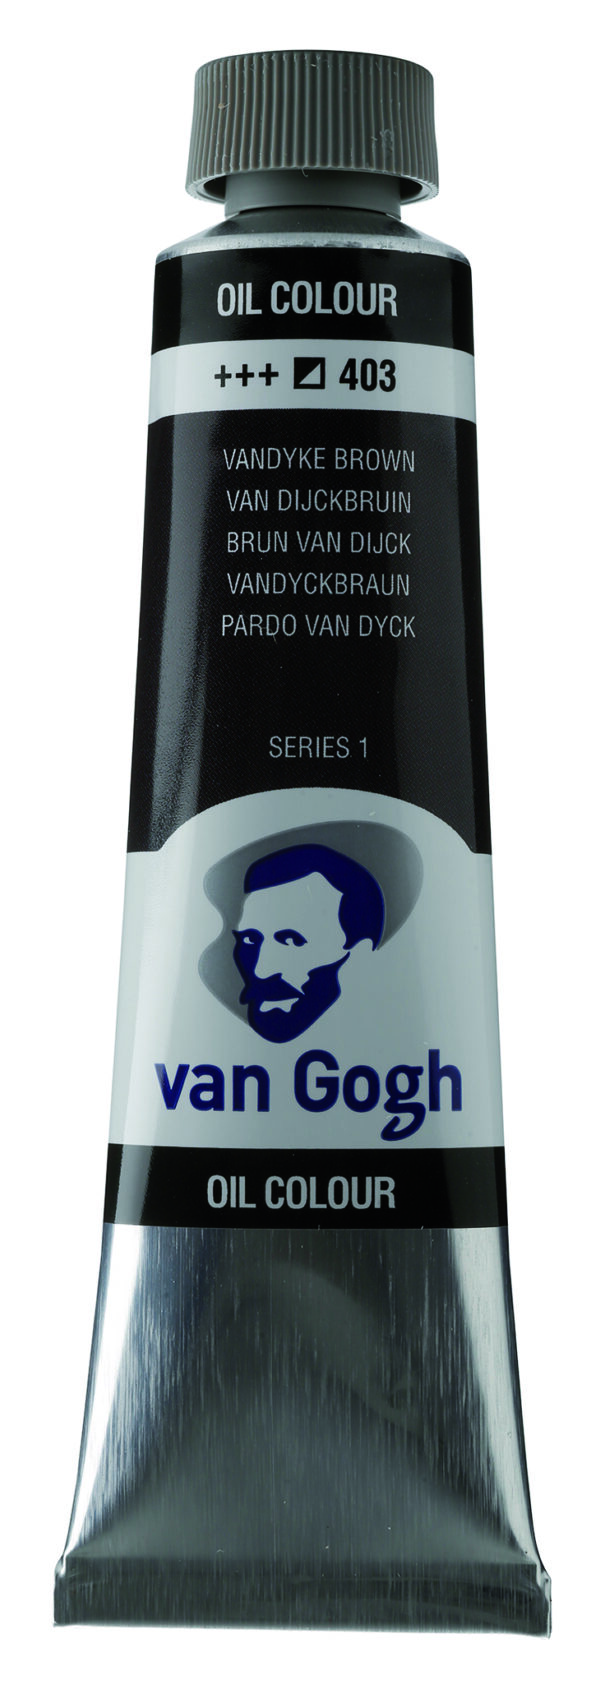 Van Gogh 403 Vandyke brown - 40 ml